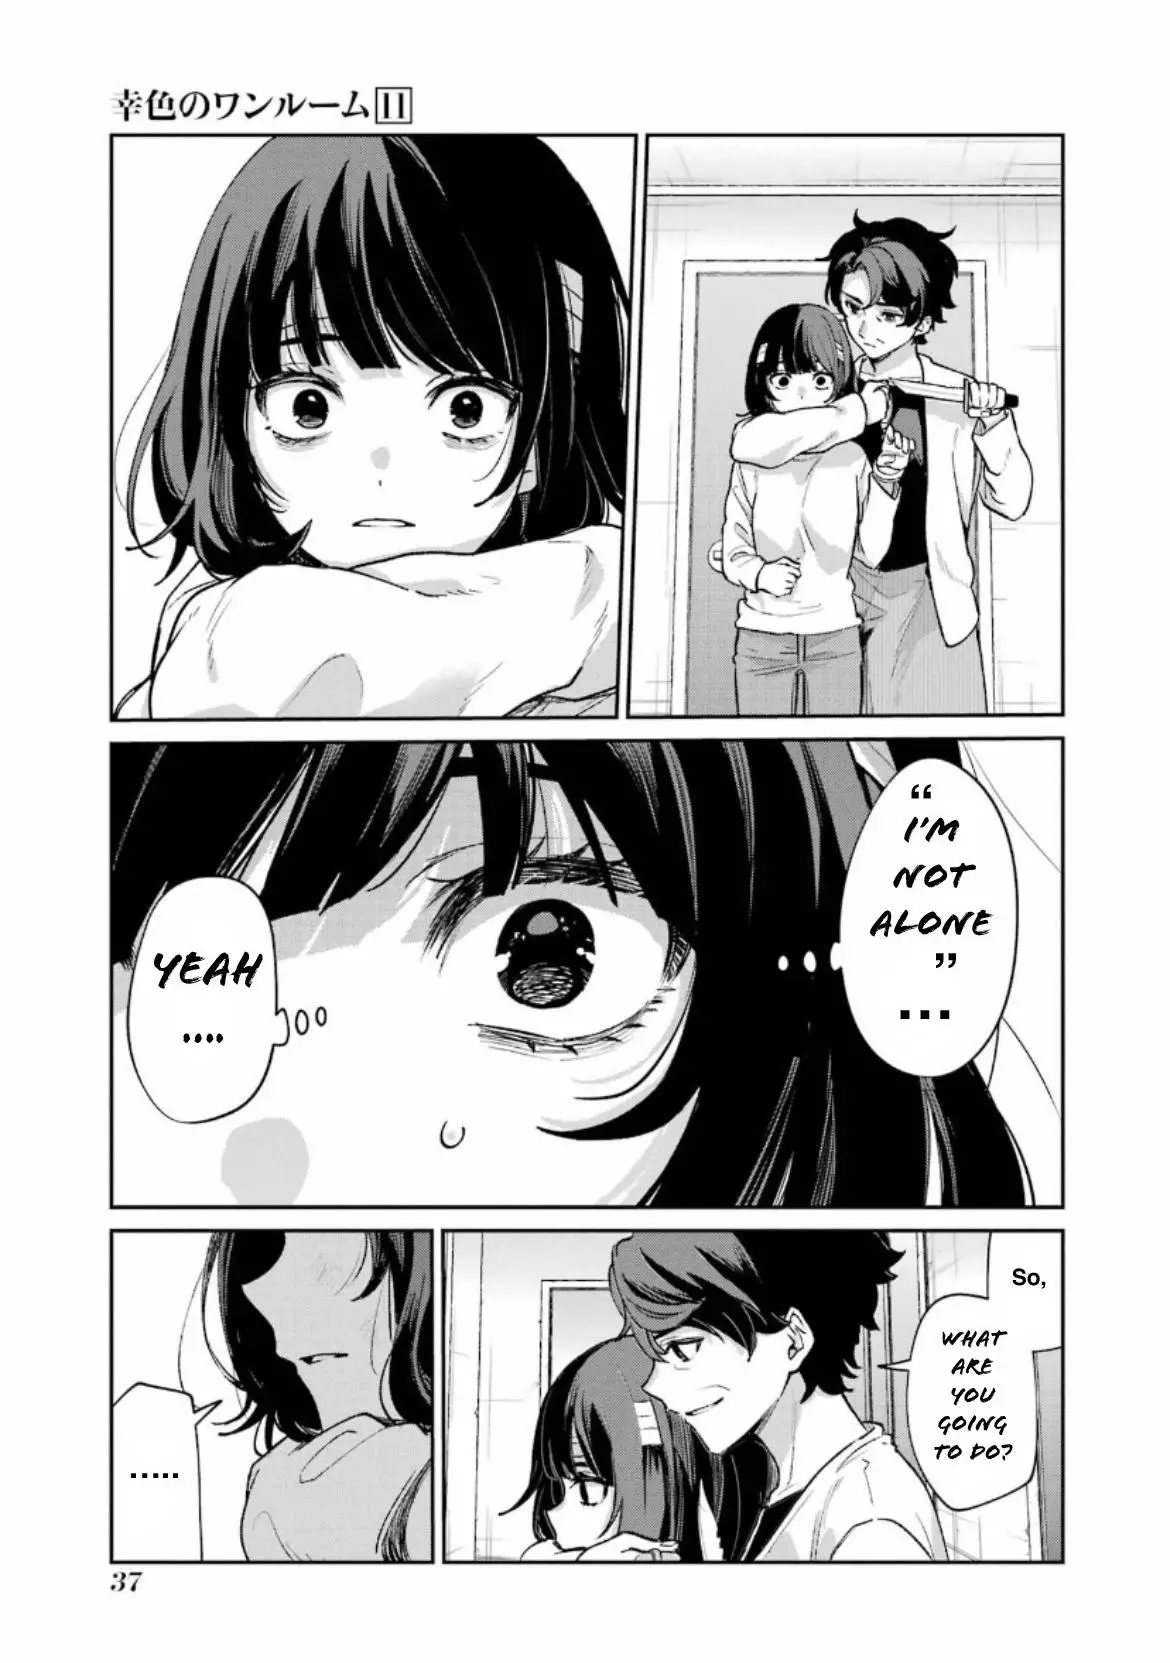 Sachi-Iro No One Room - 63 page 40-475205cf